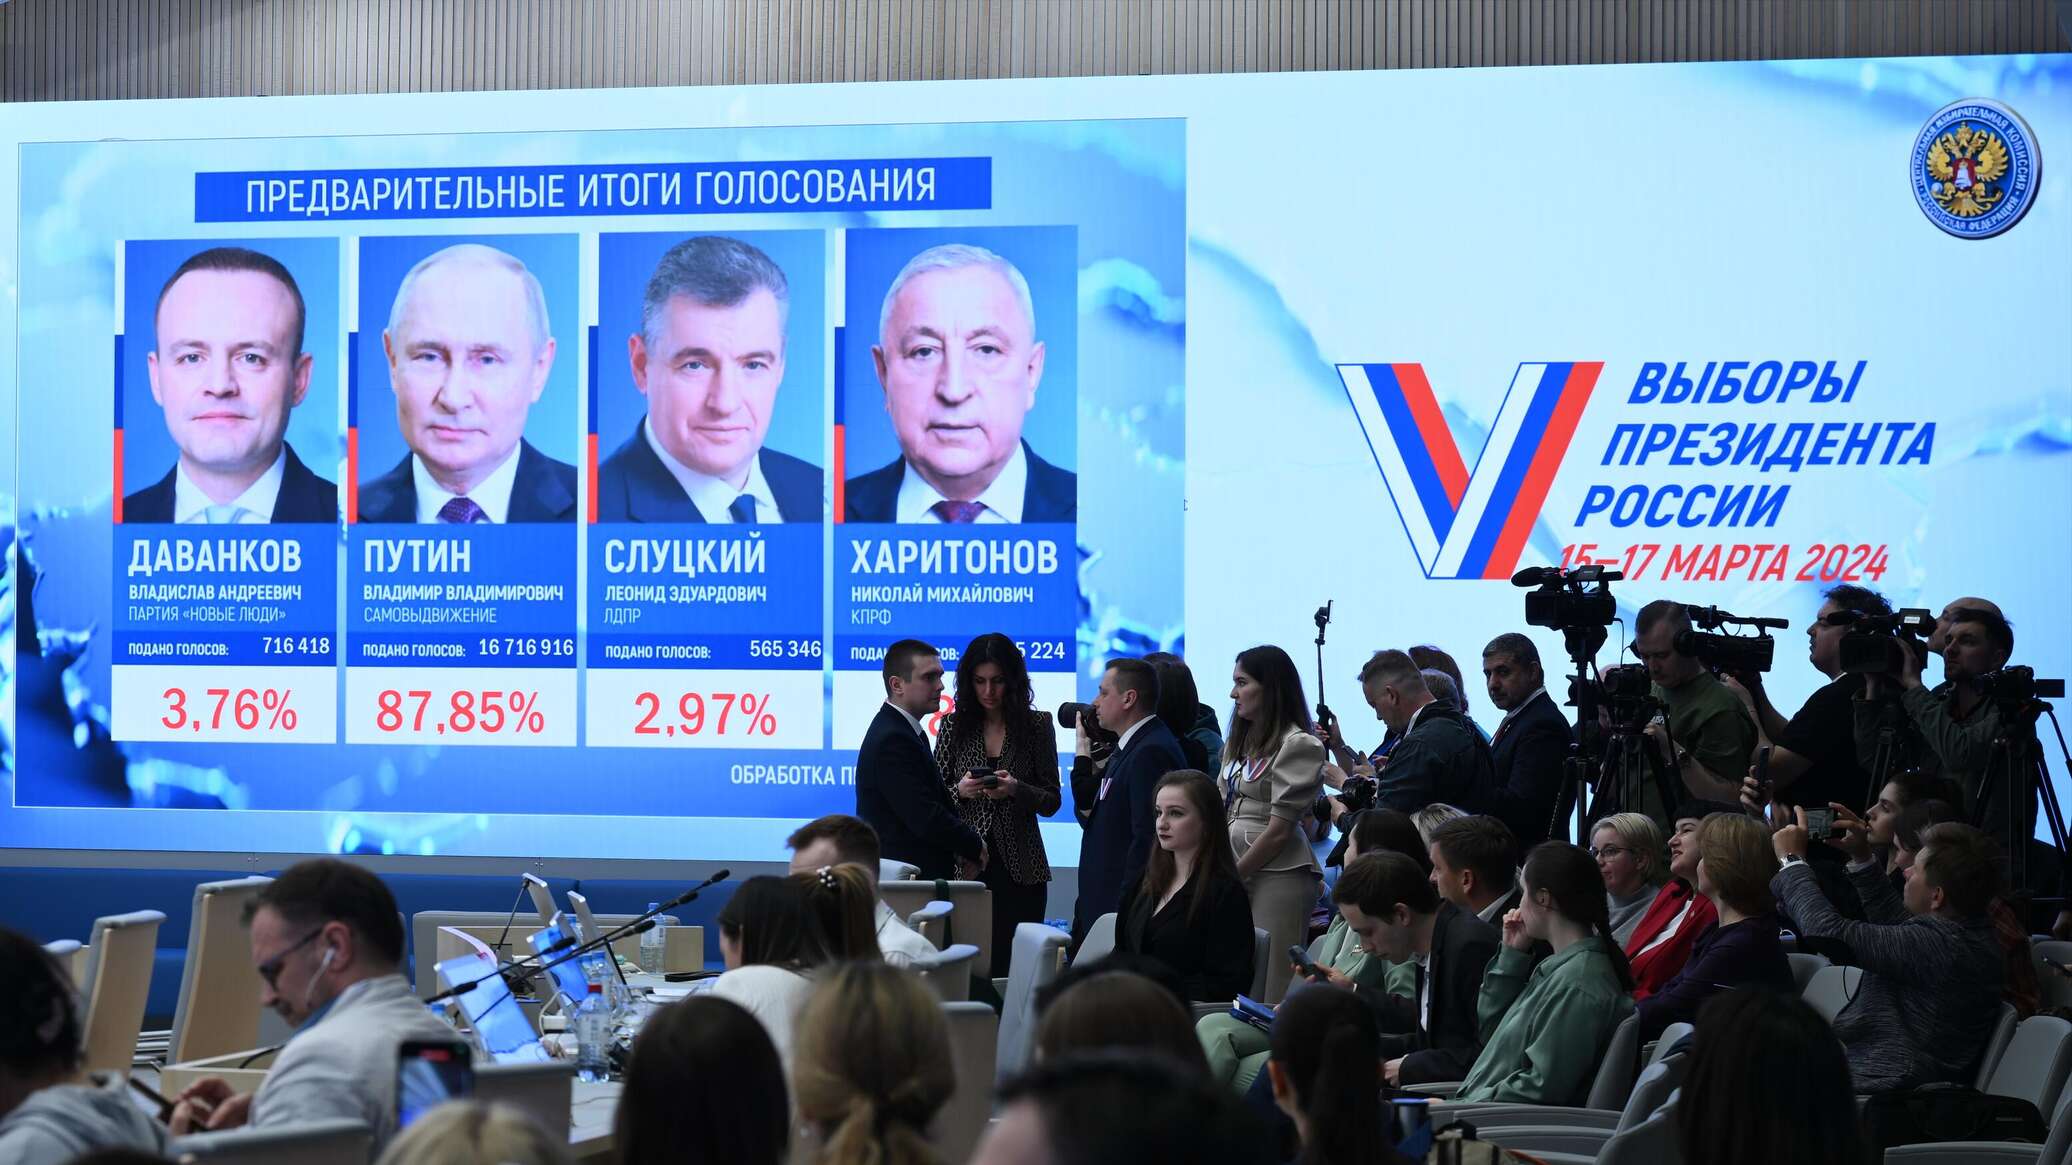 سياسي فرنسي: لم نلحظ أي خروقات في انتخابات الرئاسة الروسية